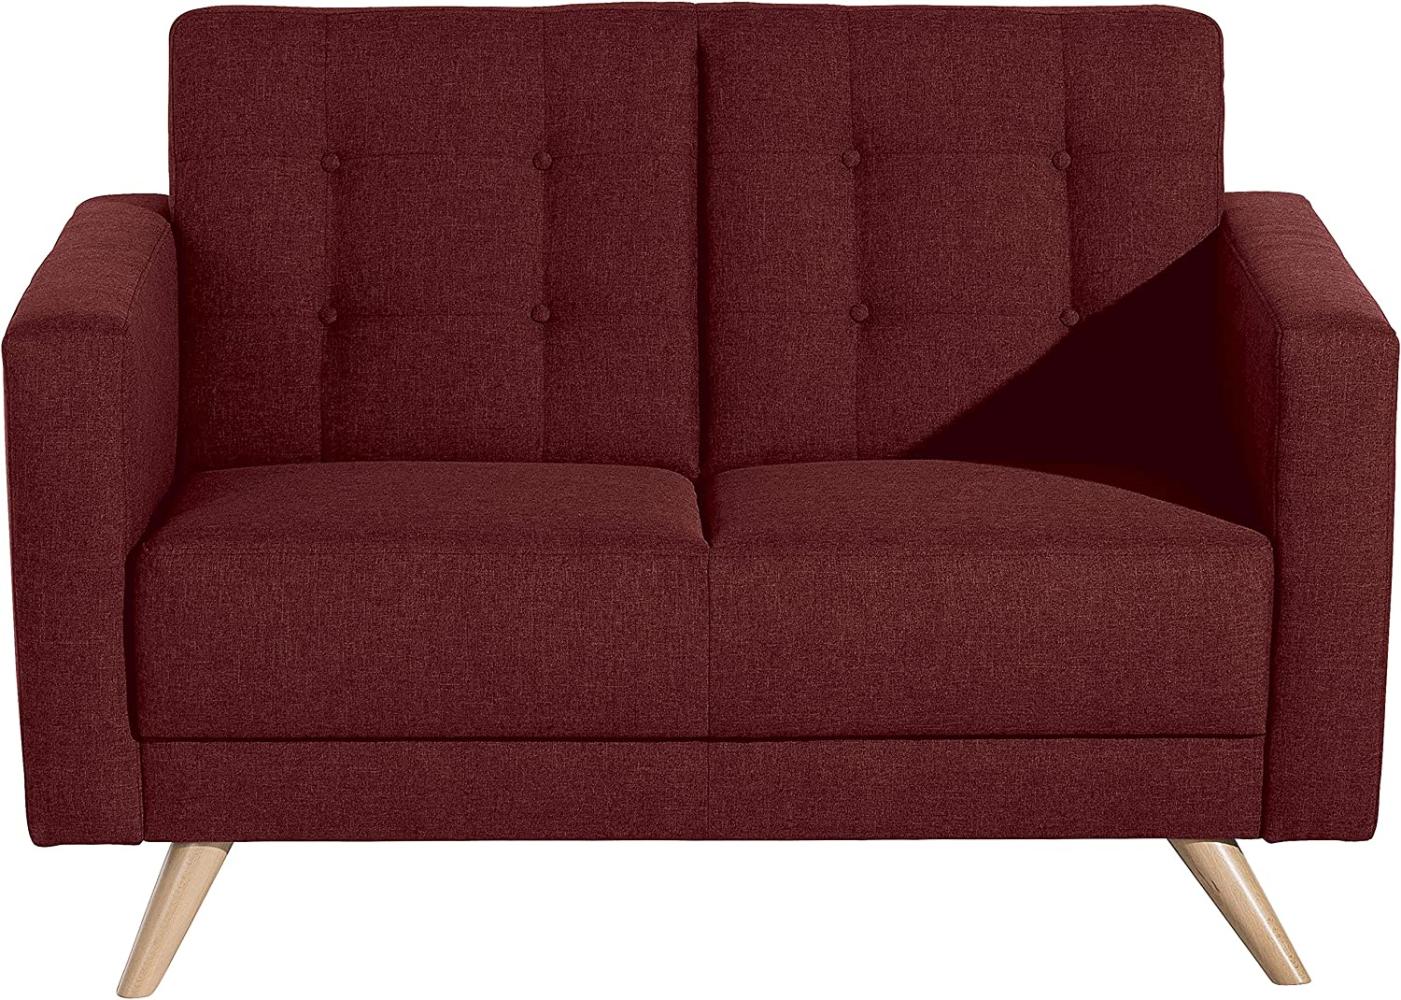 Max Winzer Sofa 2-Sitzer Julian 128 x 83 x81 cm rot Bild 1